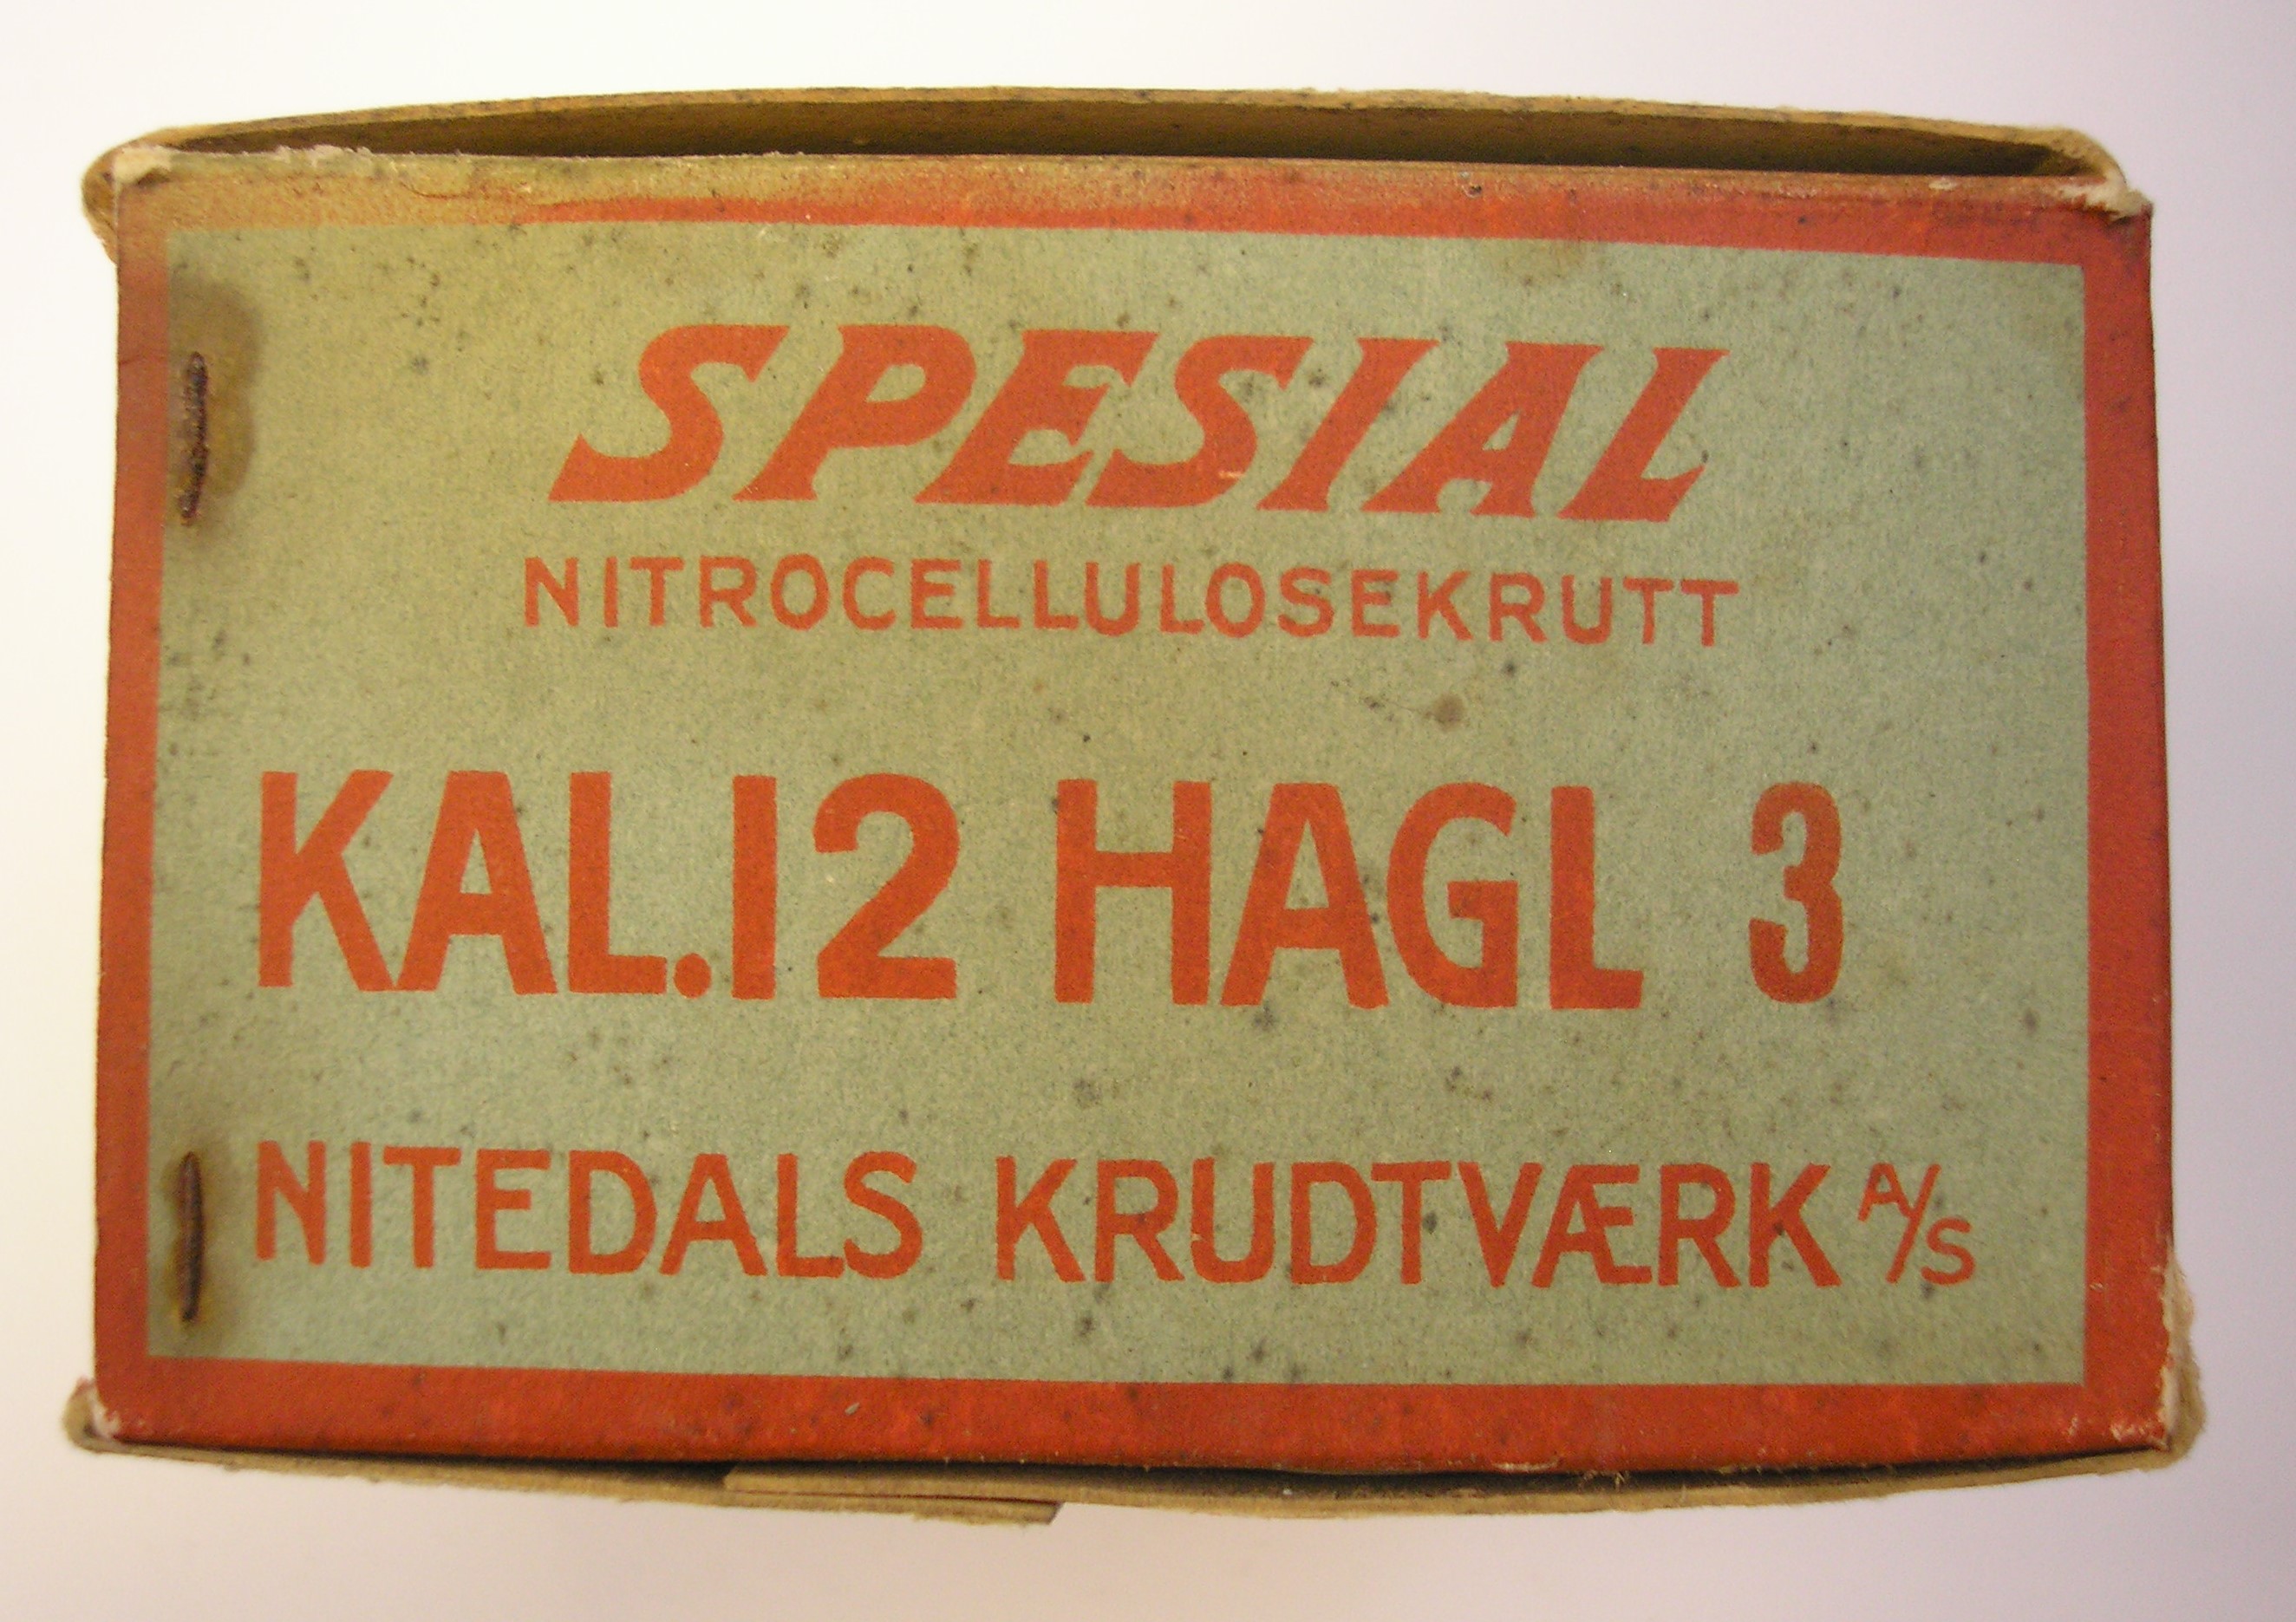 ./ammo/hagle/esker/Eske-Hagle-Nitedals-Spesial-12-65-Nr3-25skudd-1.JPG